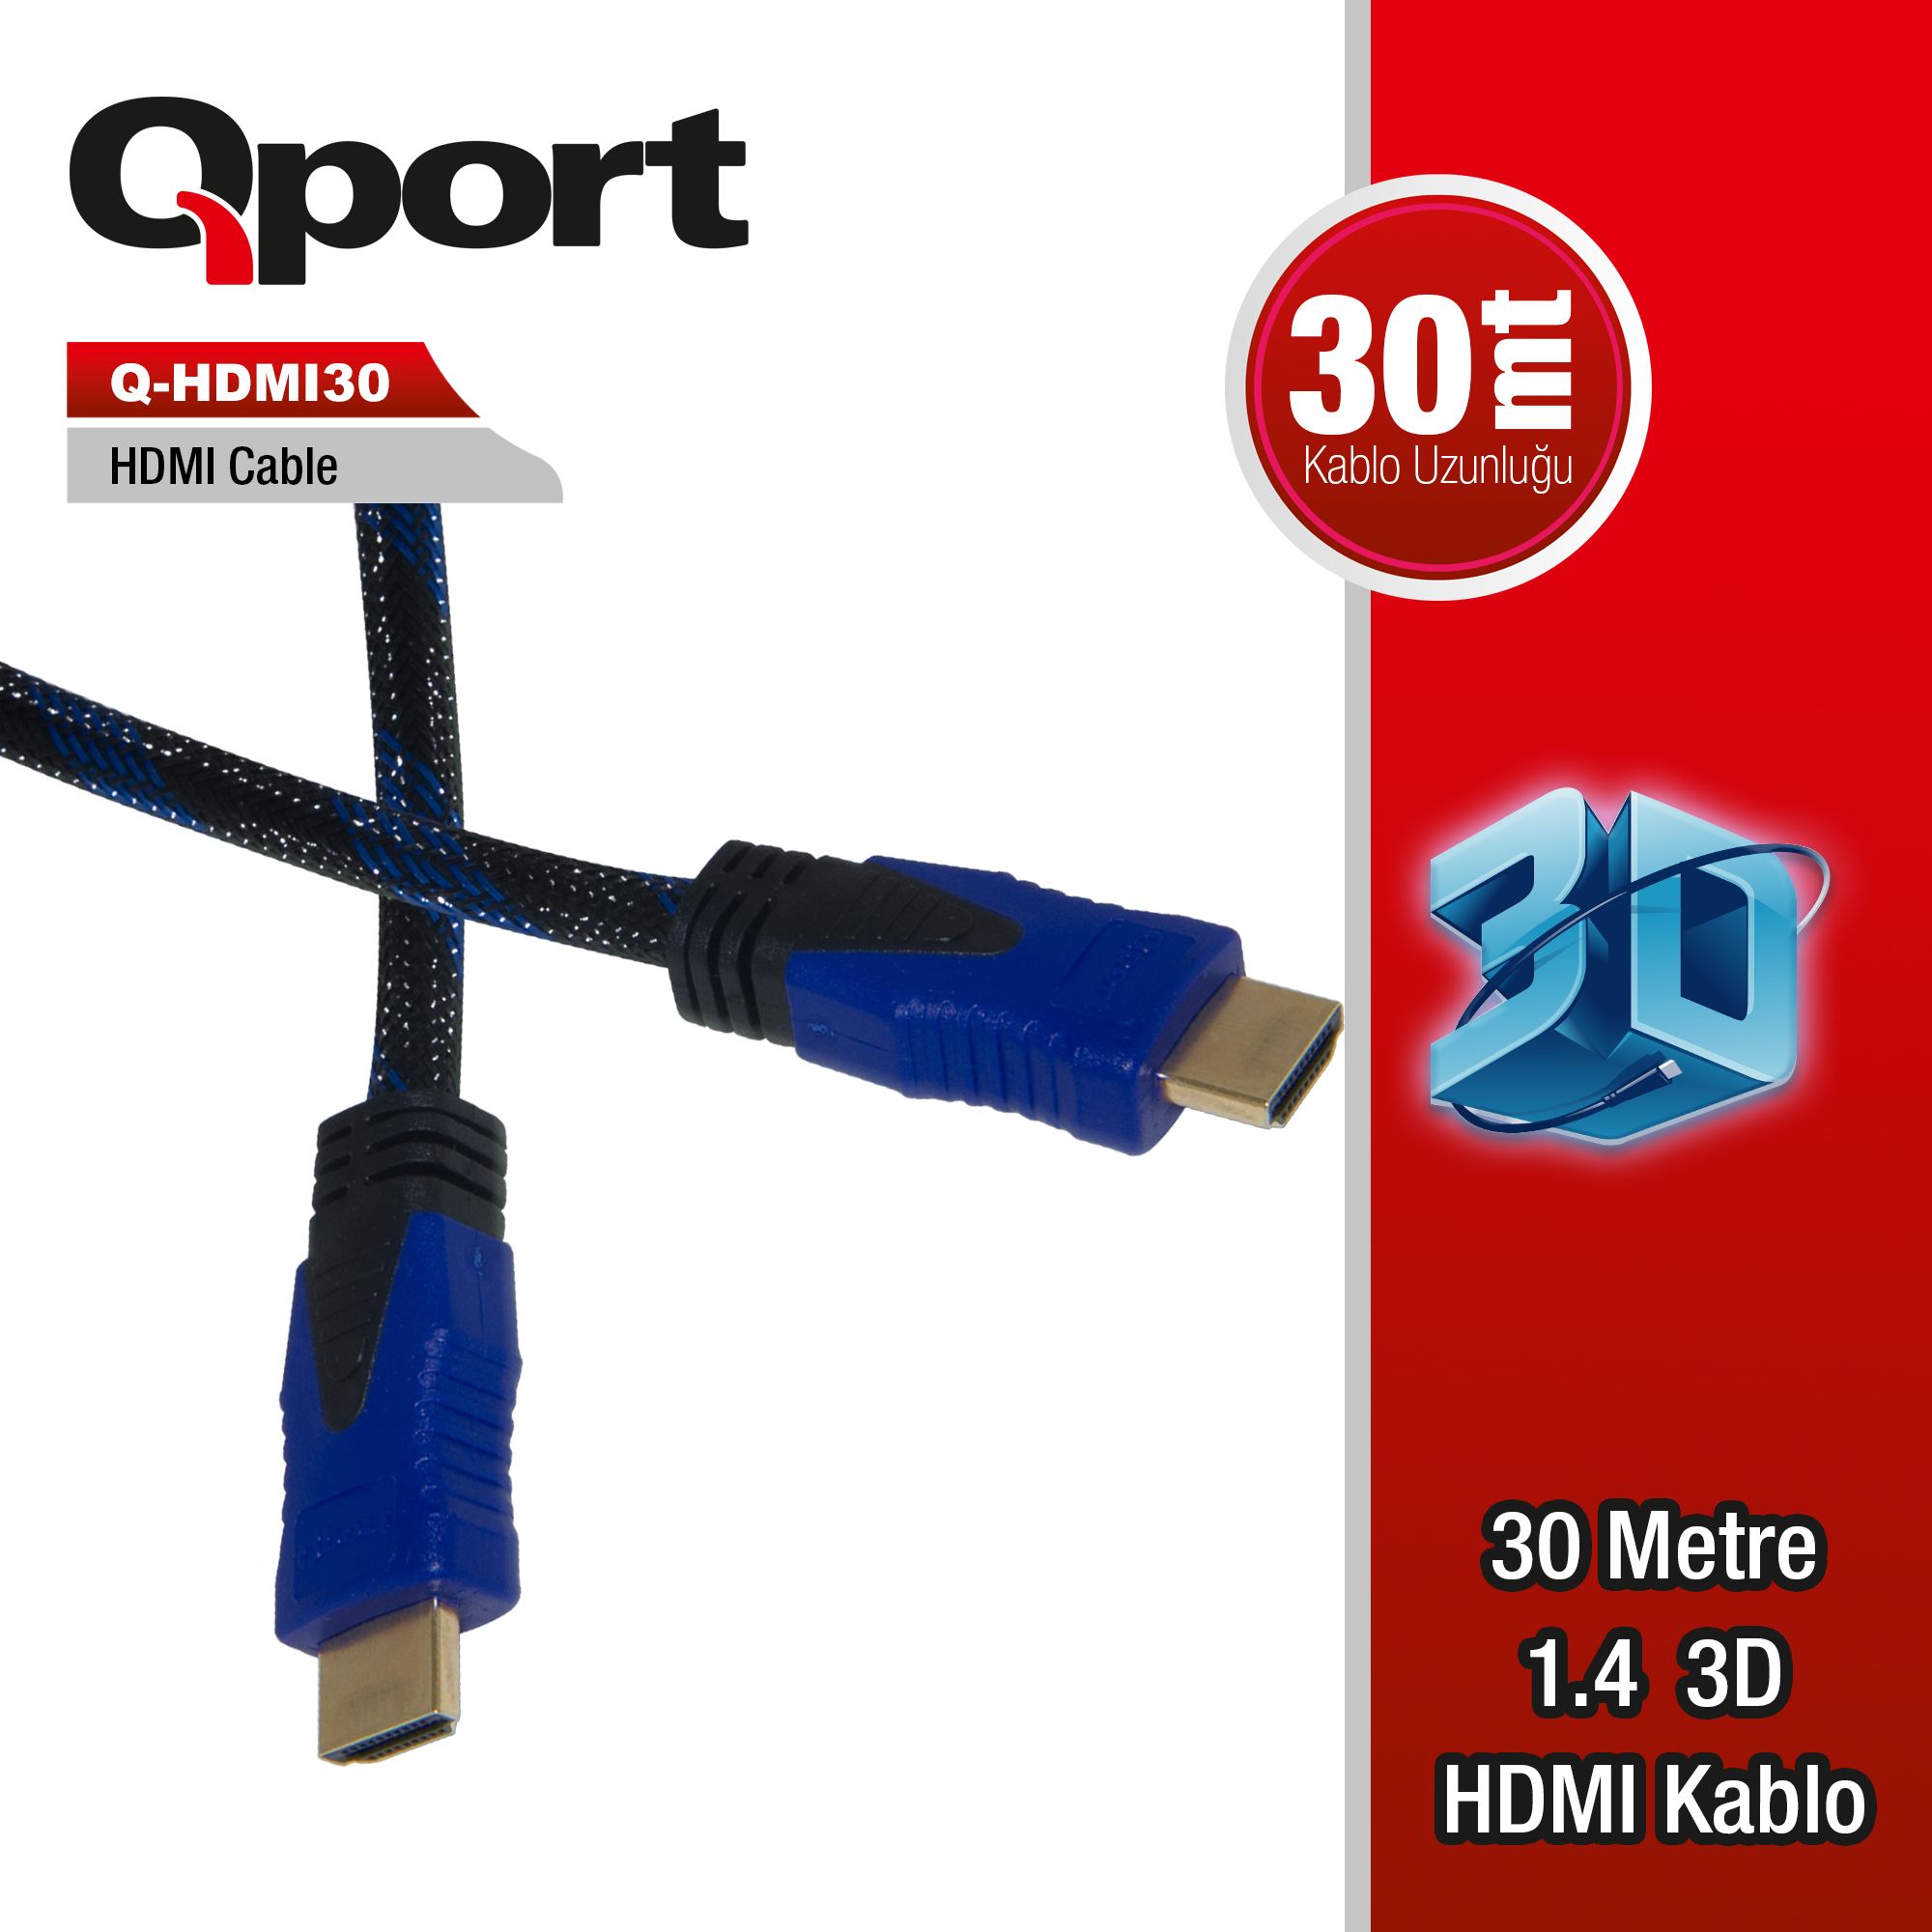 QPORT Q-HDMI30 HDMI KABLO 30MT Ver1.4 ALTIN UÇLU 3D